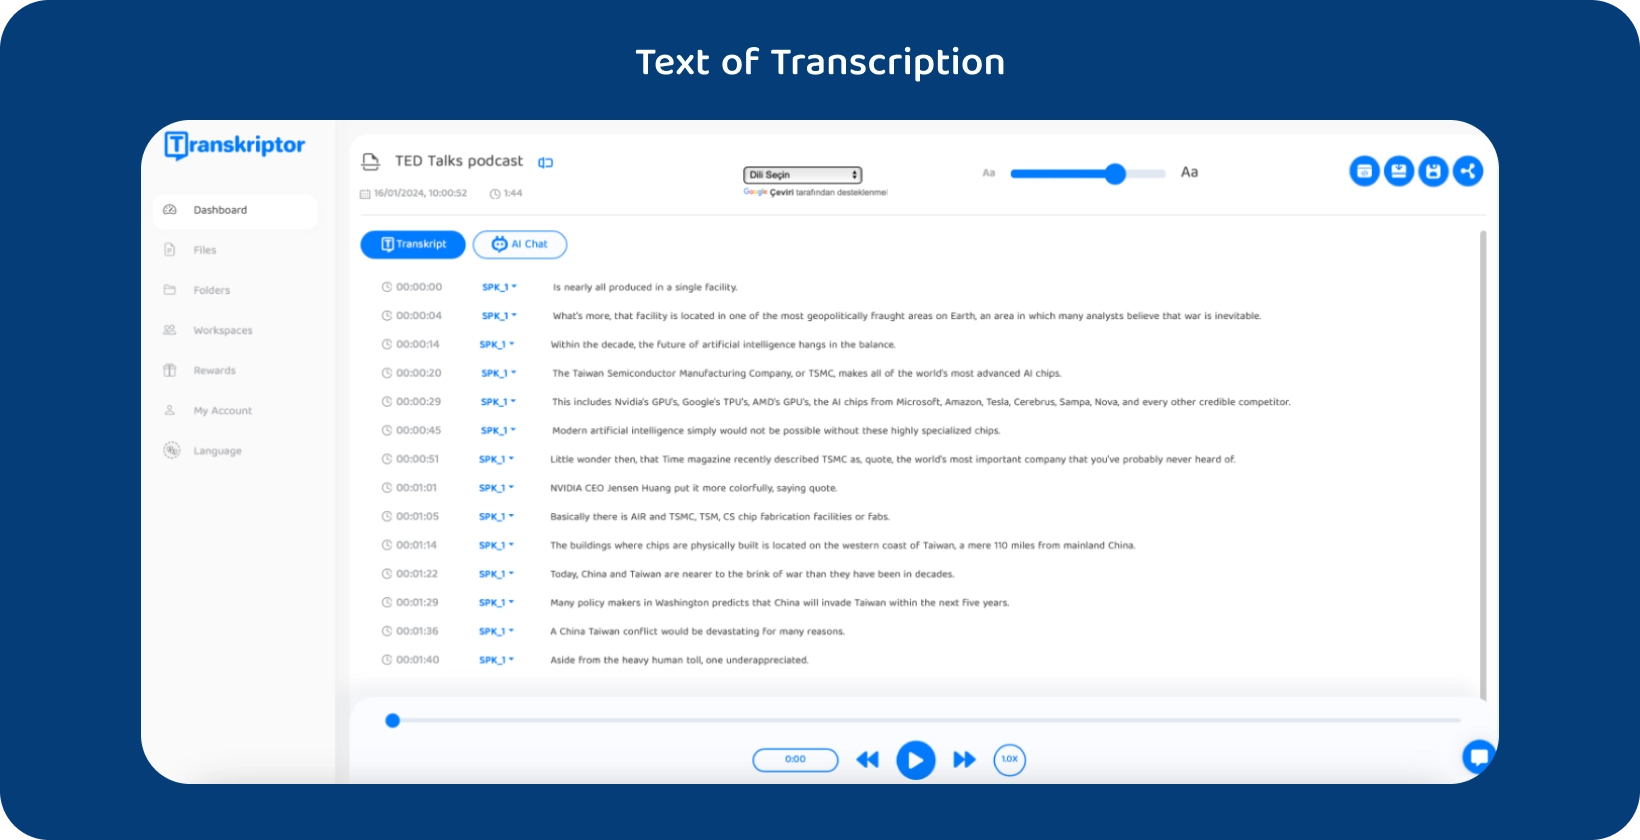 Transkriptor interfață software care afișează un podcast TED Talks transcris.